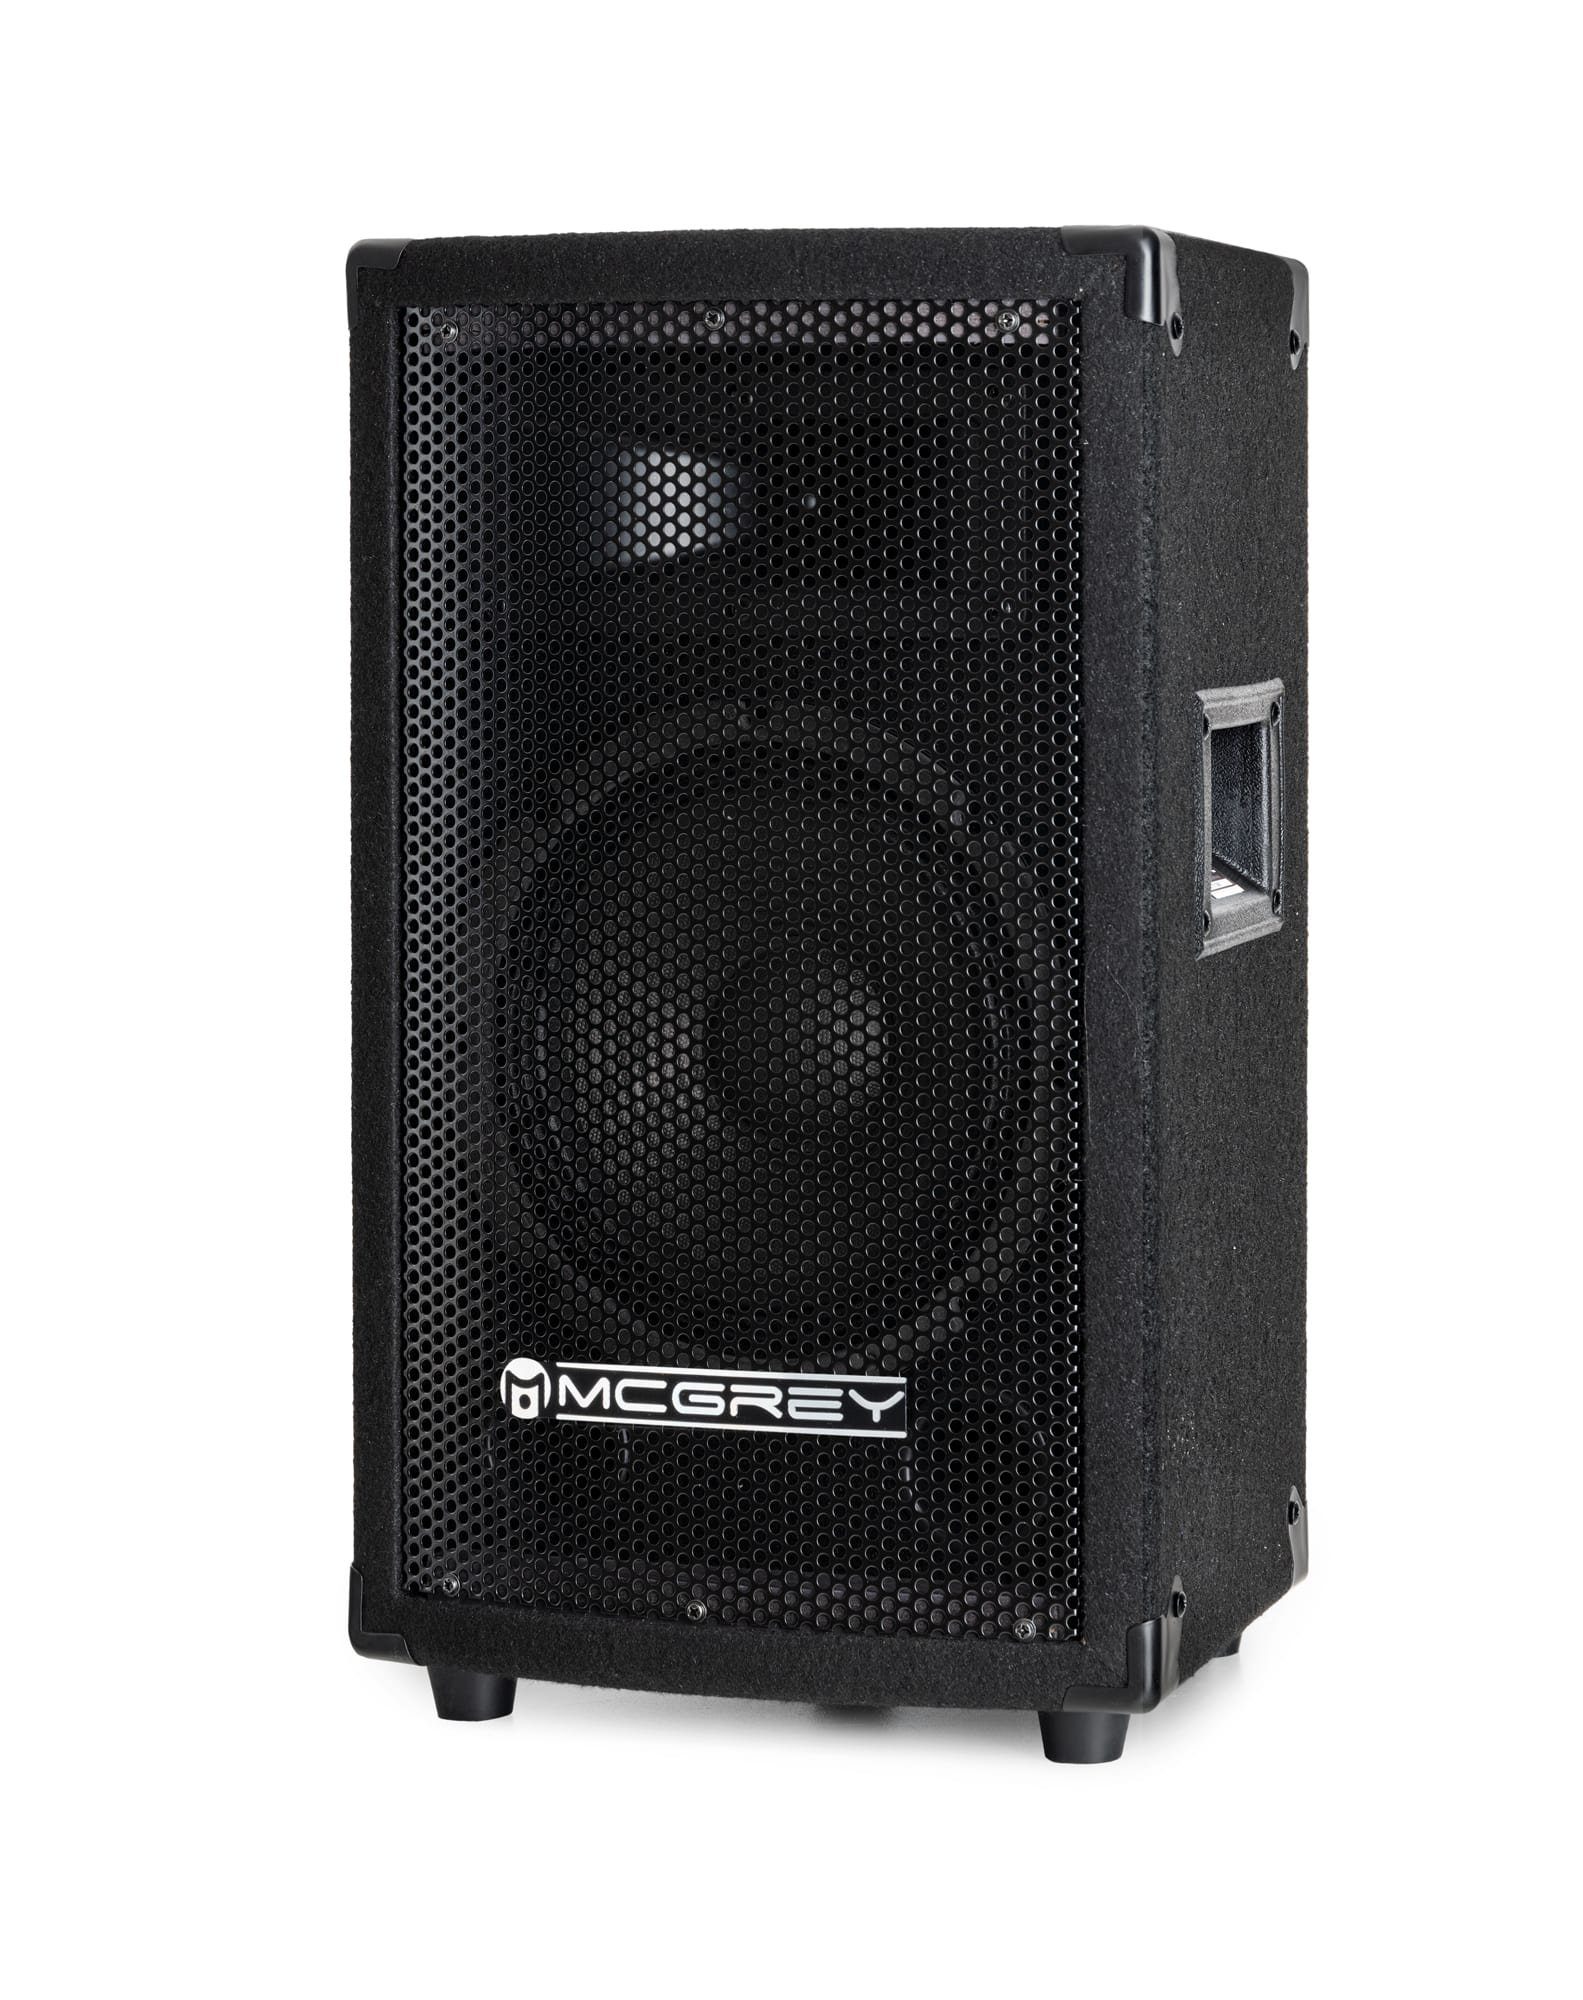 McGrey TP-8 DJ PA Passiv Box 20cm (8) Subwoofer, 2-Wege System, Holzgehäuse  Lautsprecher (150 W, Passiv-Speaker mit Boxenflansch)